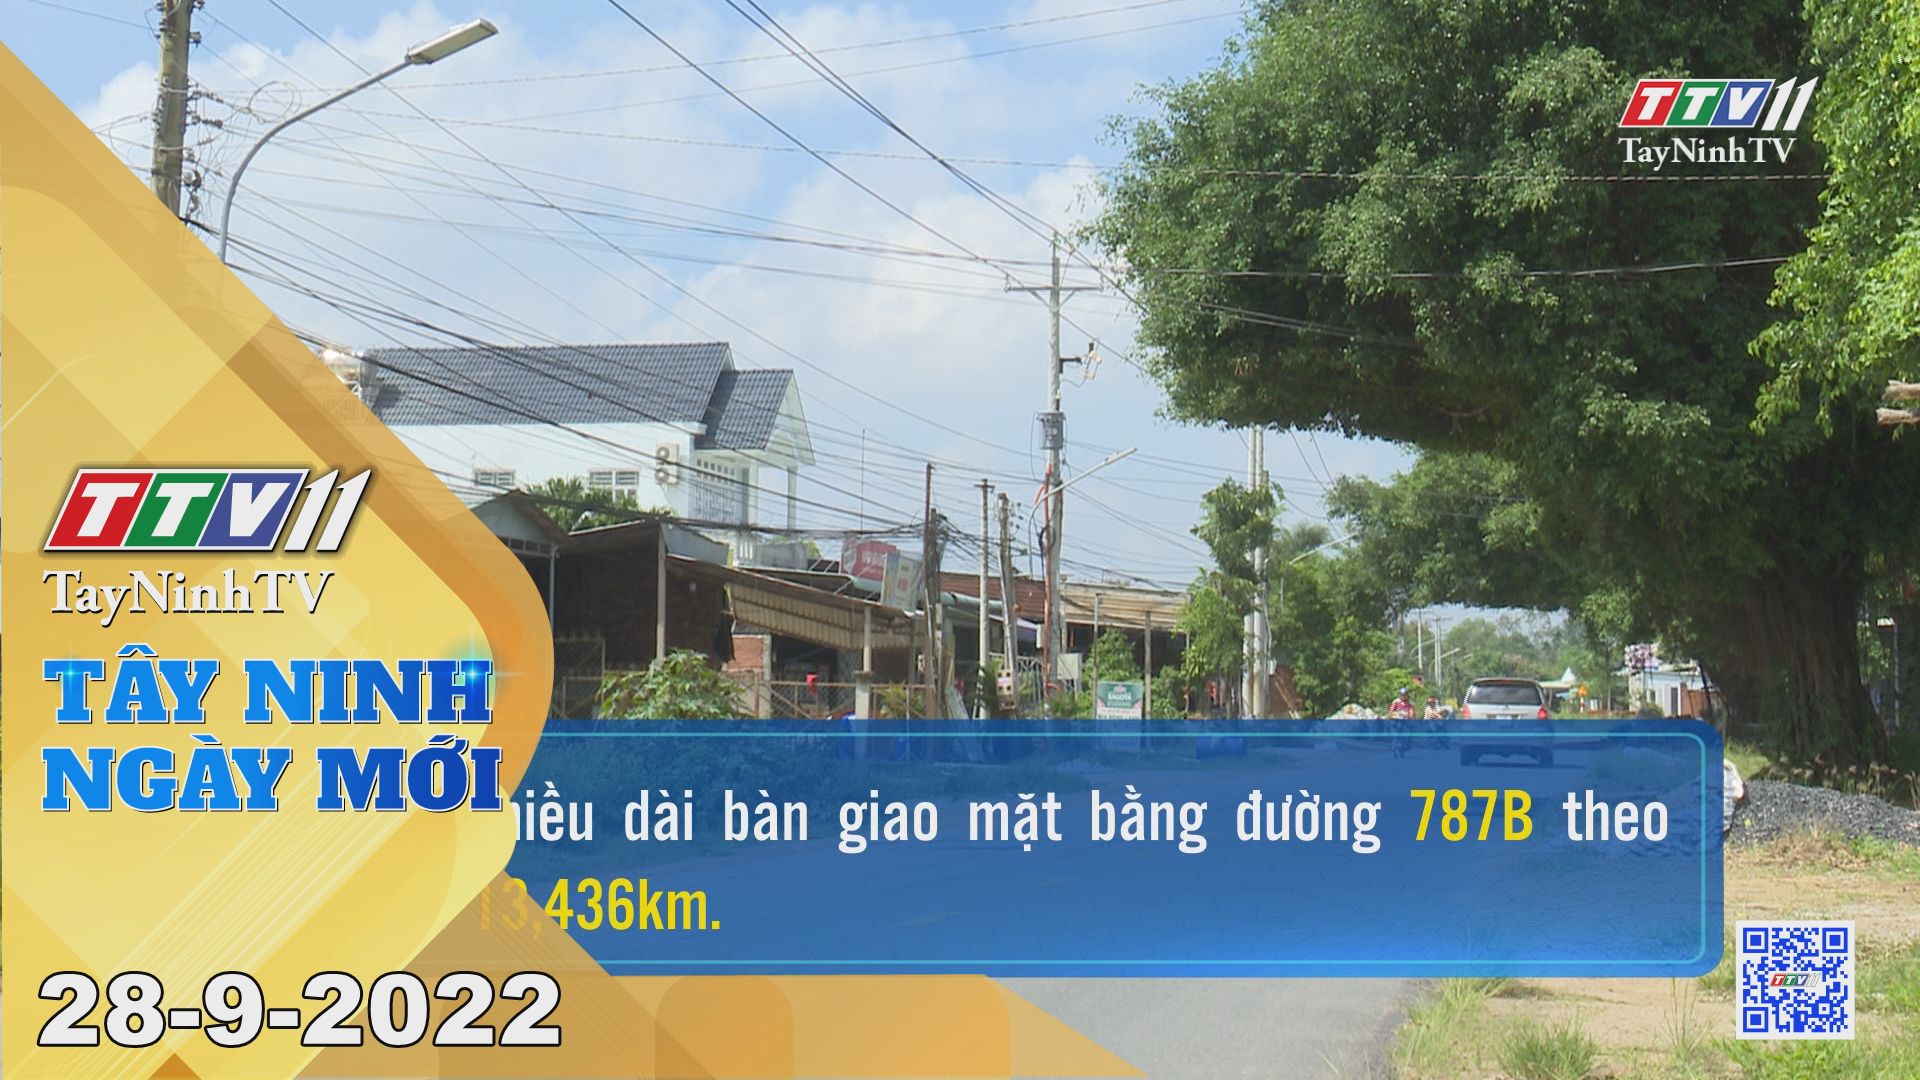 Tây Ninh ngày mới 28-9-2022 | Tin tức hôm nay | TayNinhTV